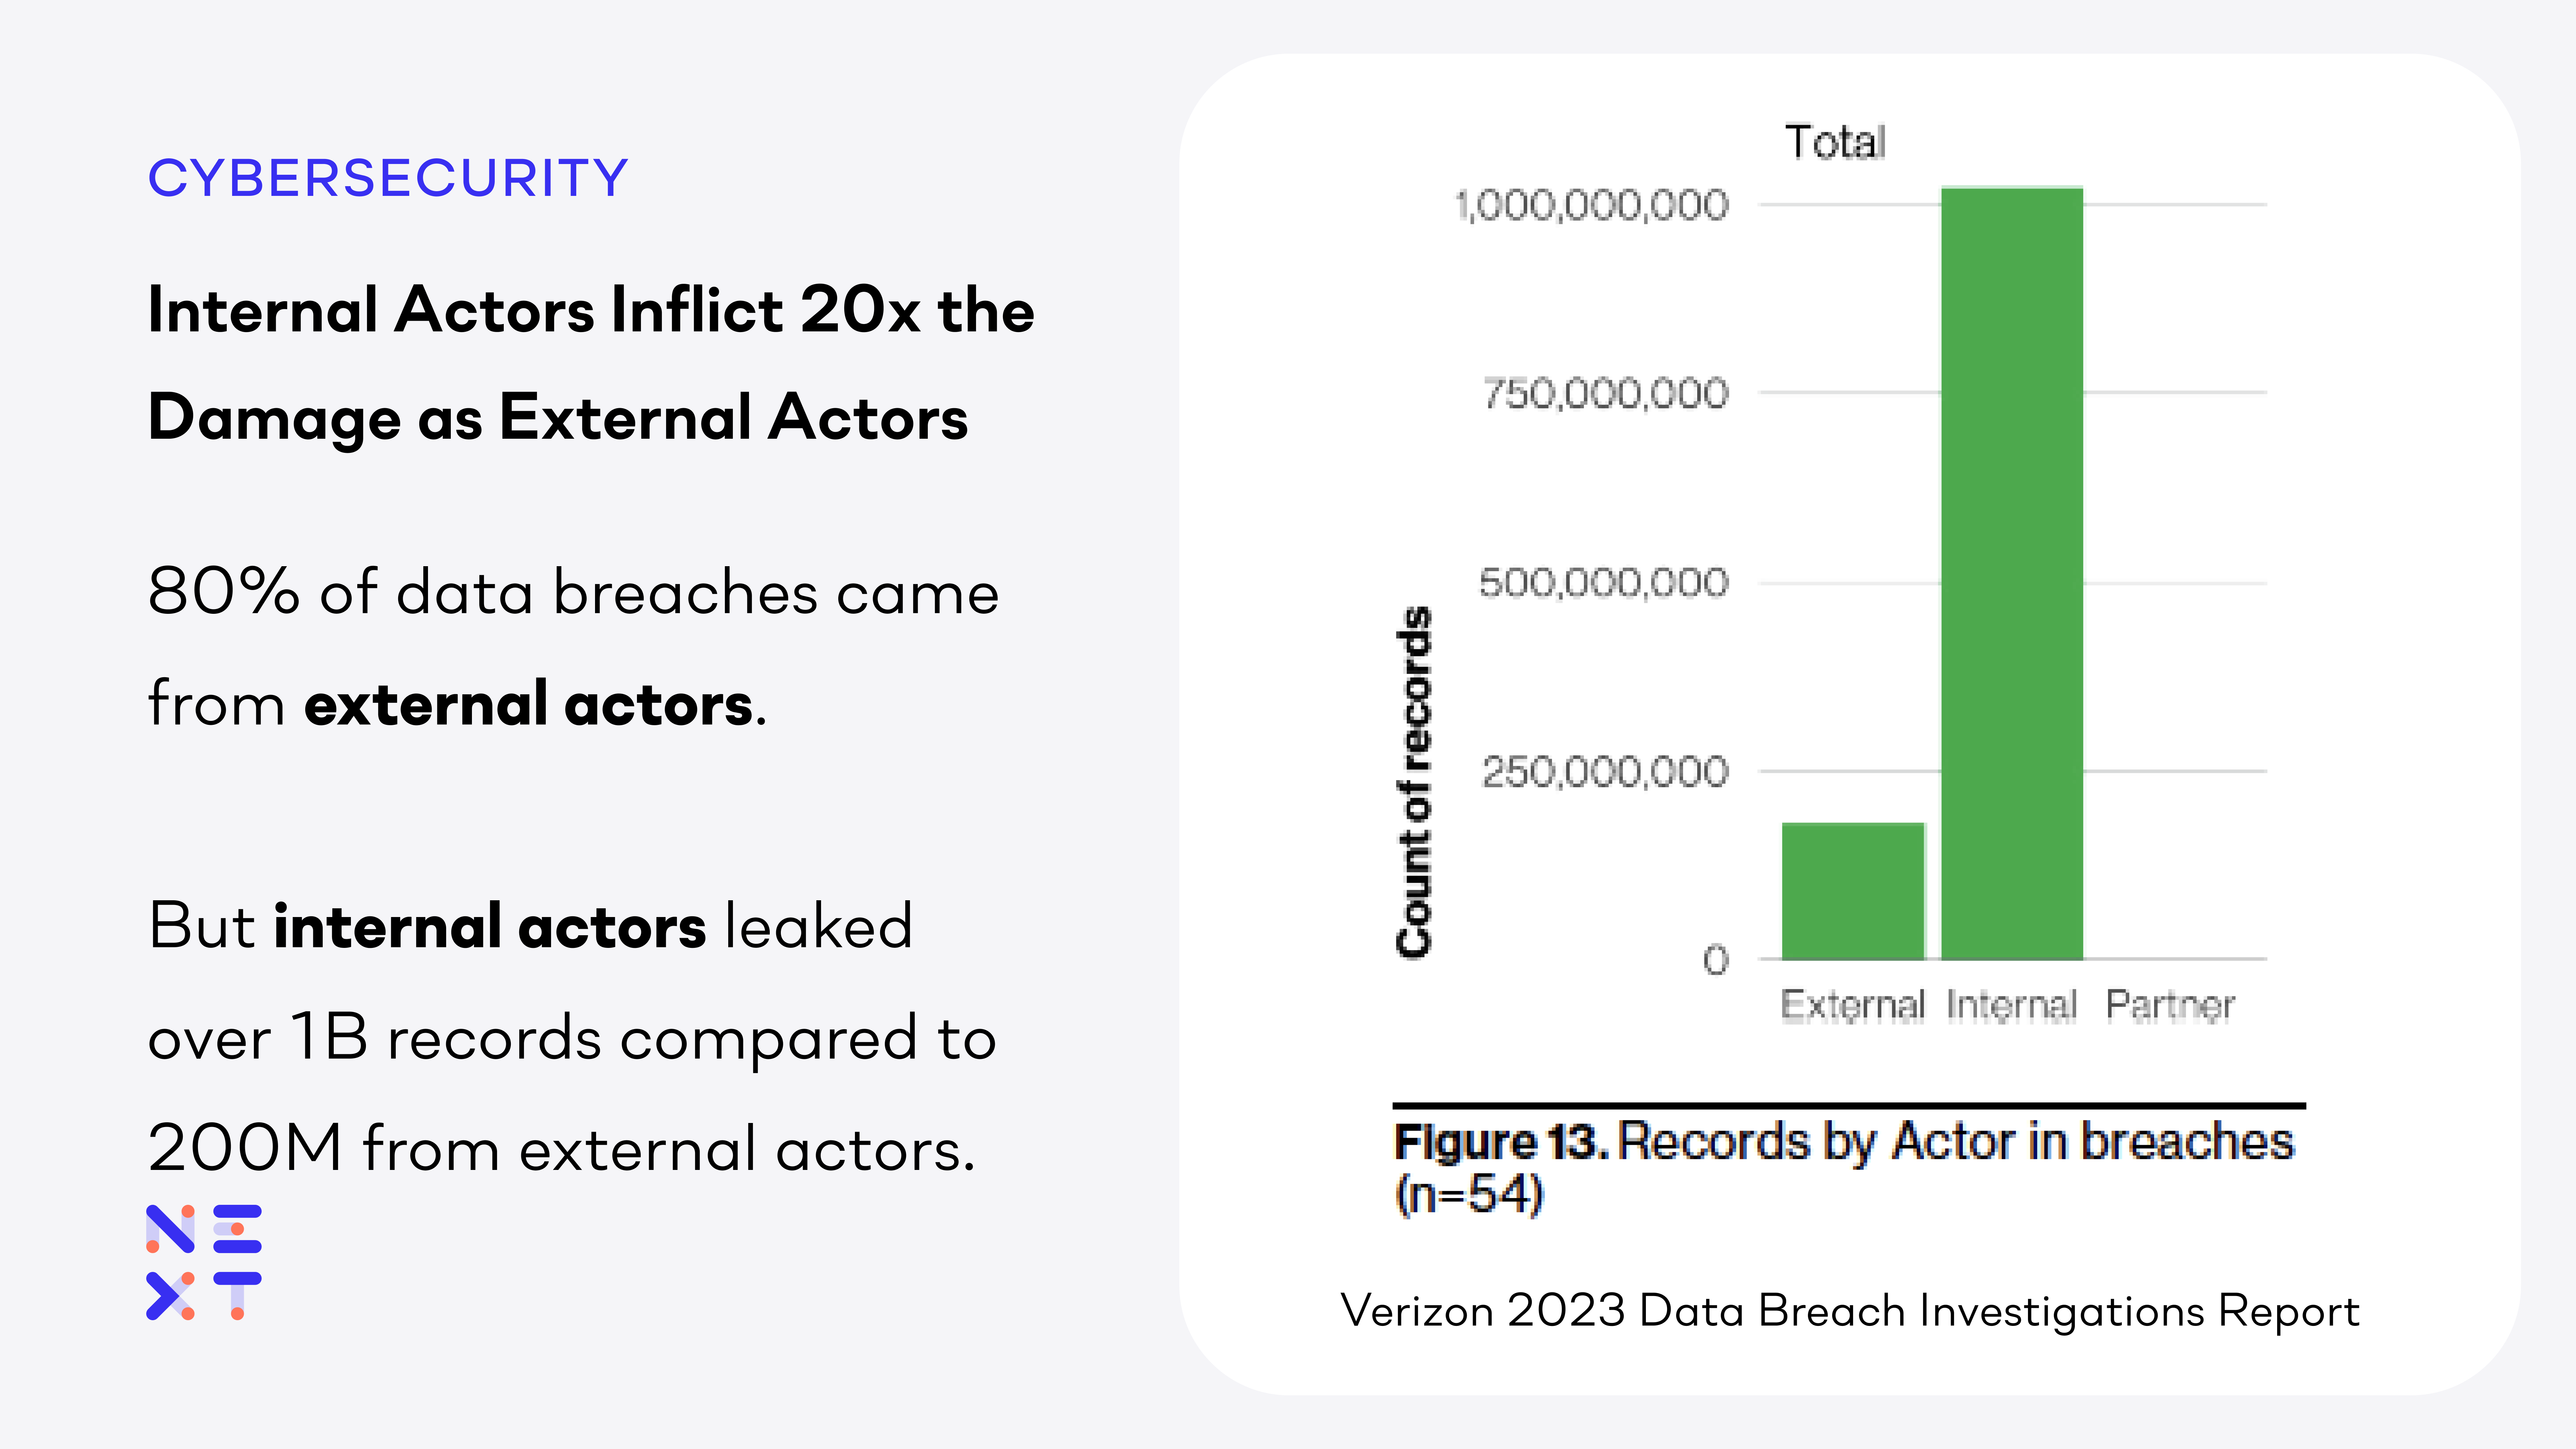 Internal Actors Statistics